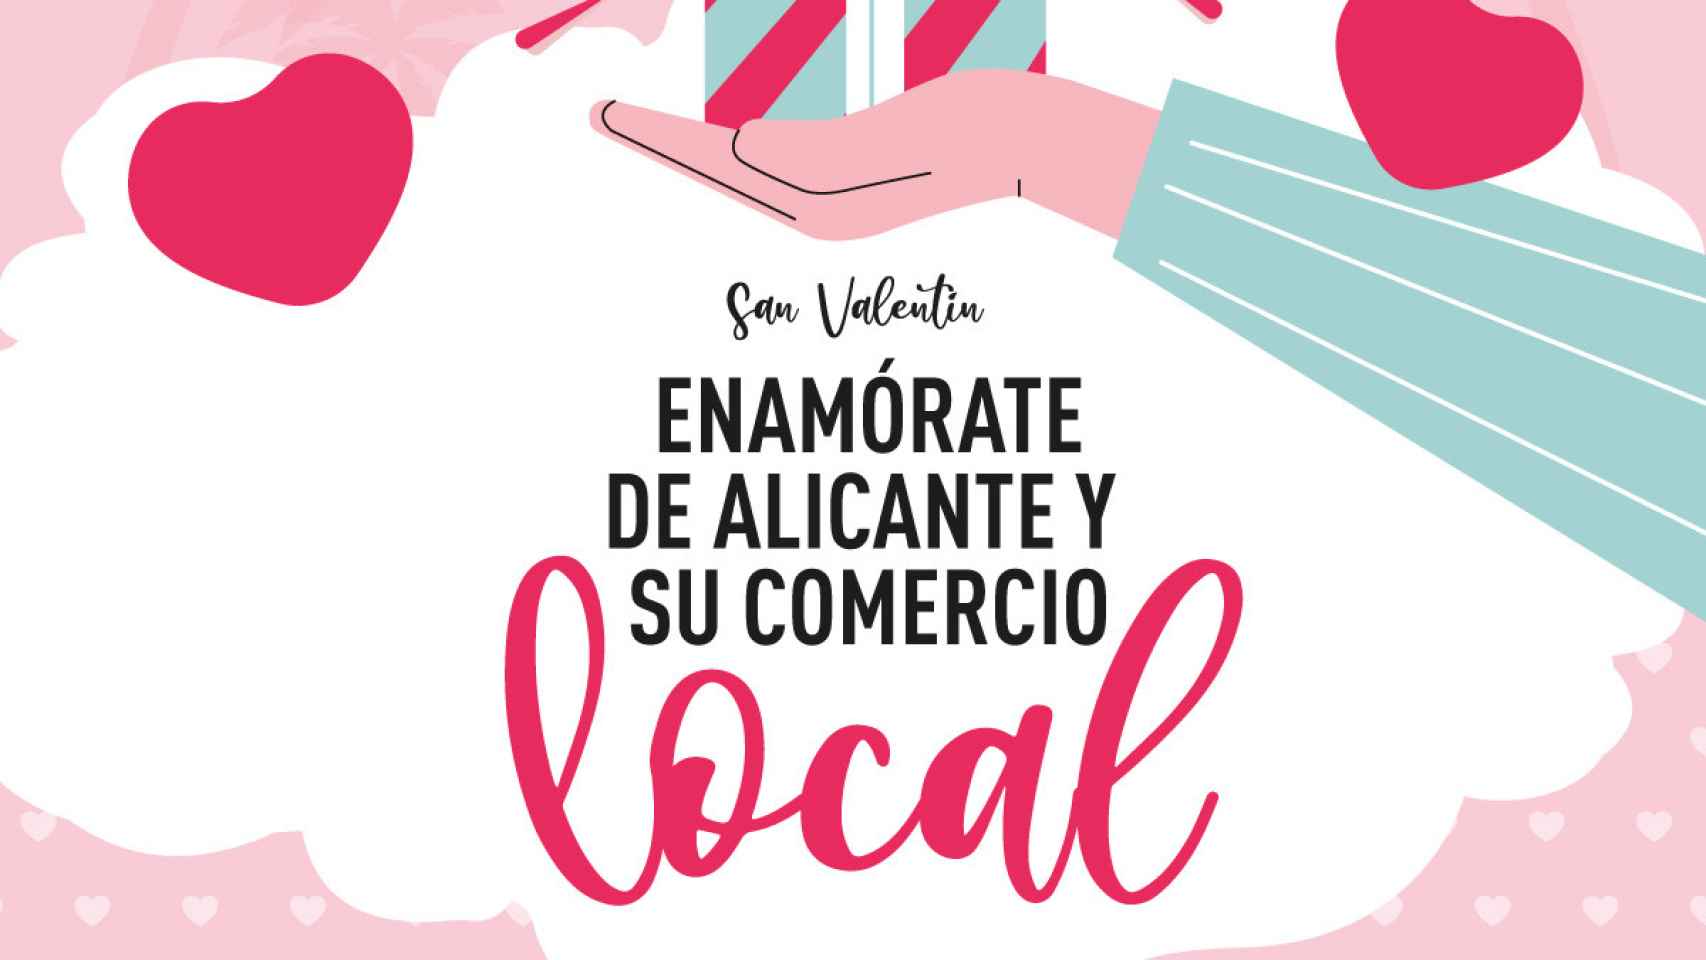 Detalle del cartel promocional de la campaña de impulso de comercio local de Alicante.